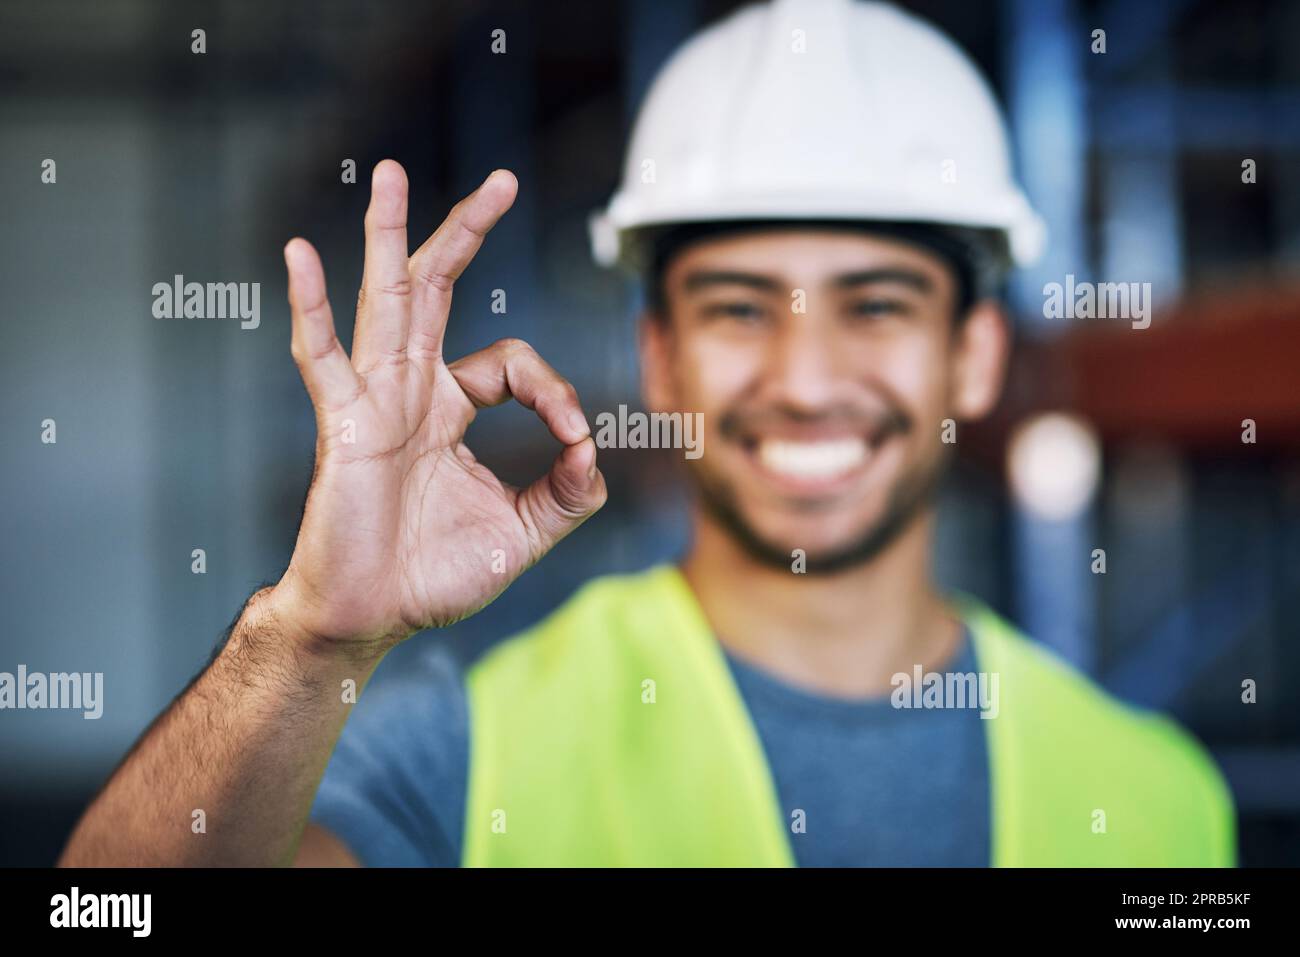 Erano conformi alla sicurezza 100. Ritratto di un giovane che lavora mostrando un gesto giusto in un cantiere. Foto Stock